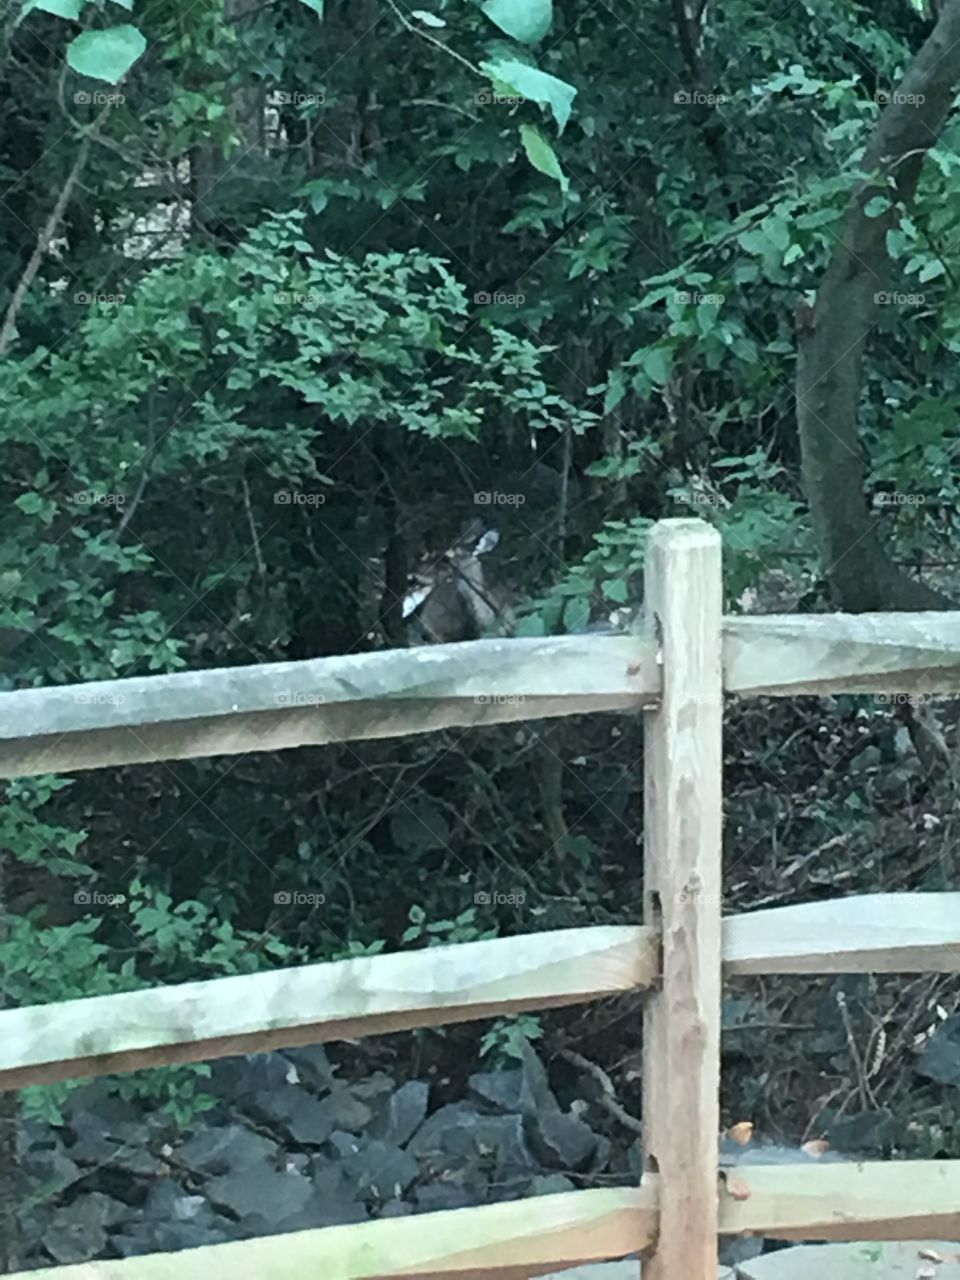 Deer in Woods